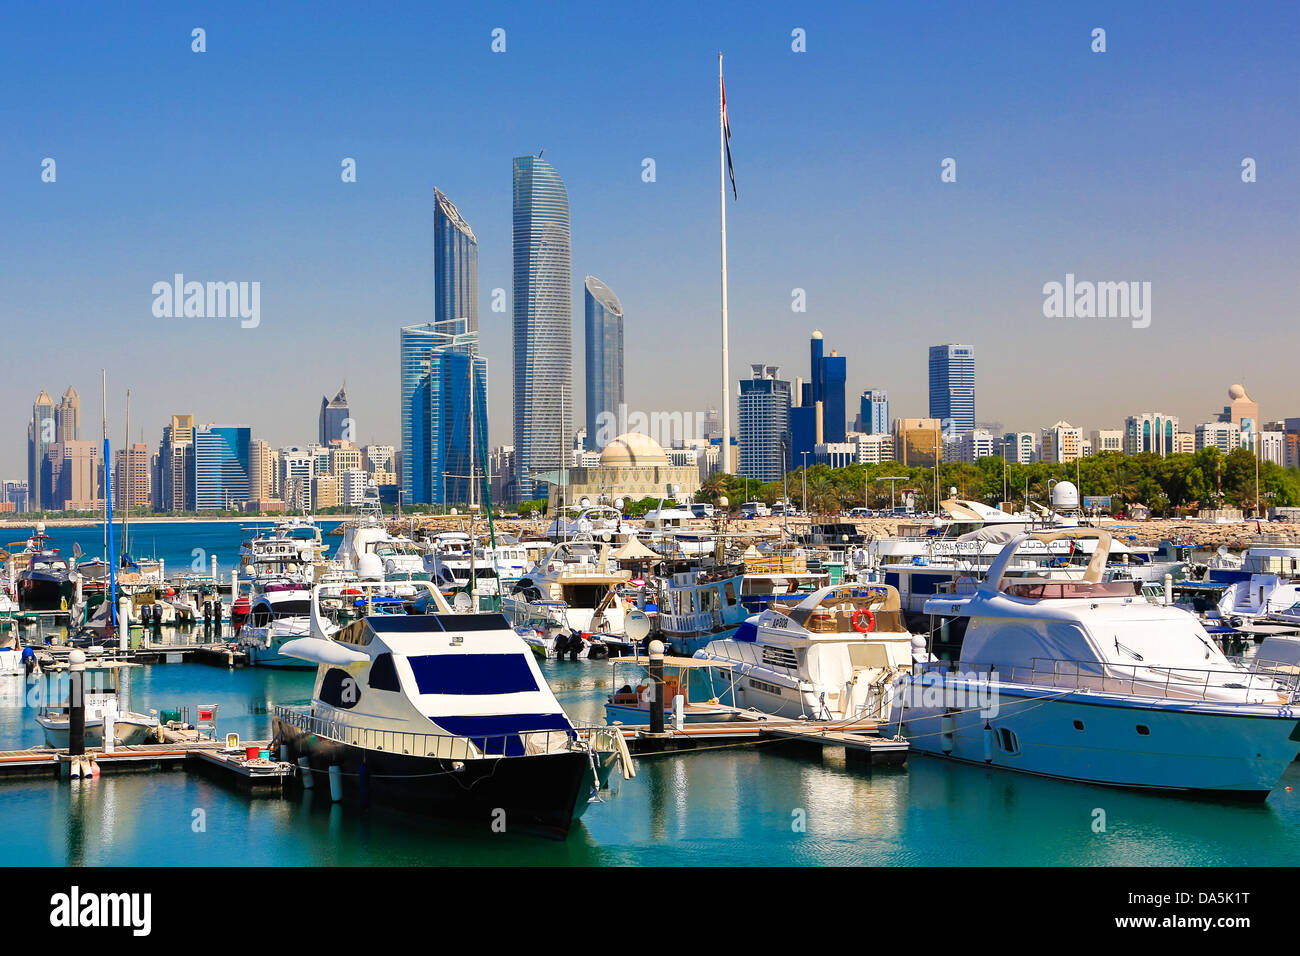 Vereinigte Arabische Emirate, Vereinigte Arabische Emirate, Nahost, Abu Dhabi, Stadt, Skyline, Central Market Tower, Tower, Architektur, Boote, Gebäude, d Stockfoto